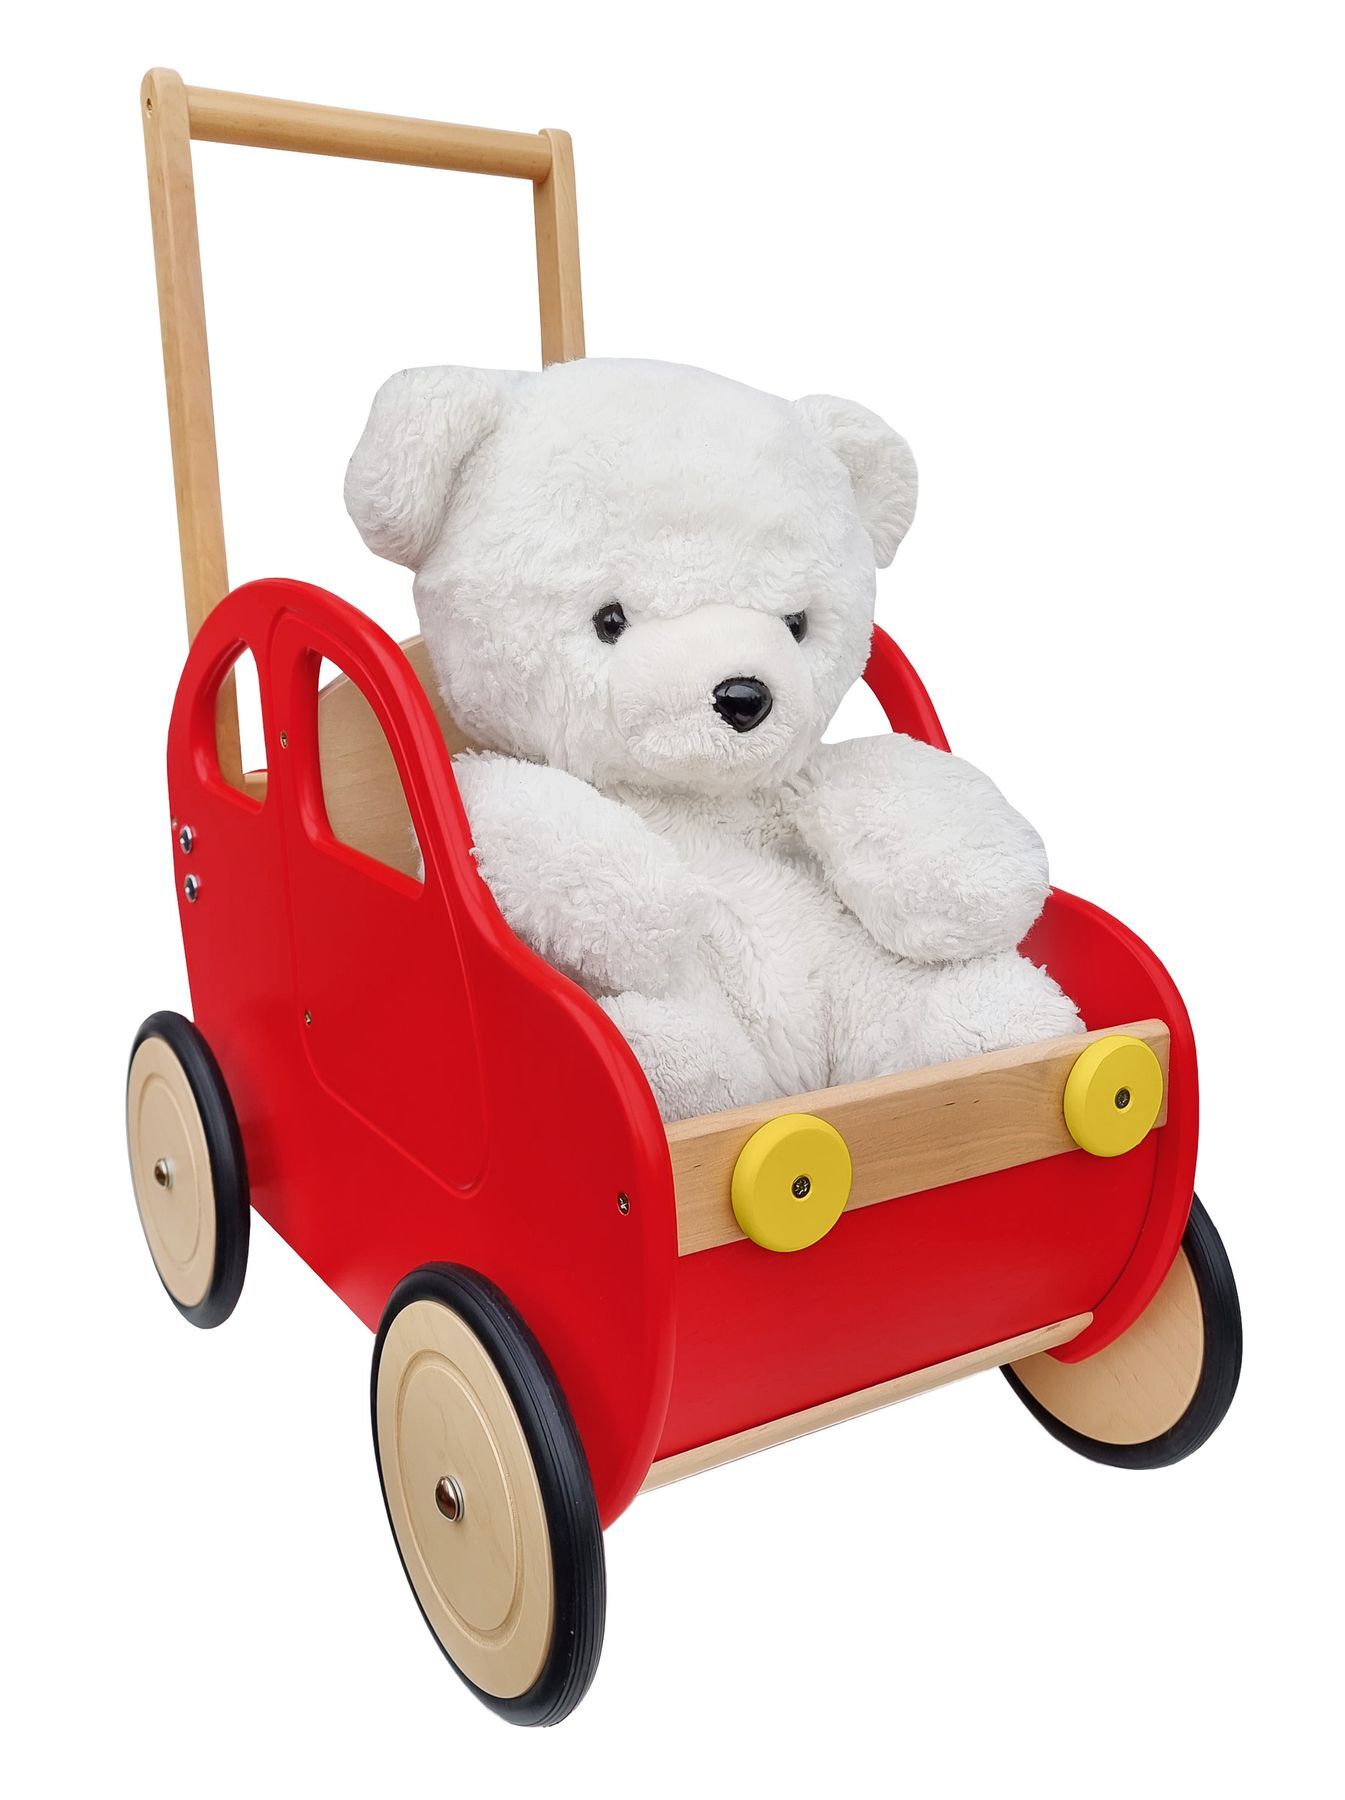 Solida carrozzina per bambini e bambolotti in legno massello 934-3100